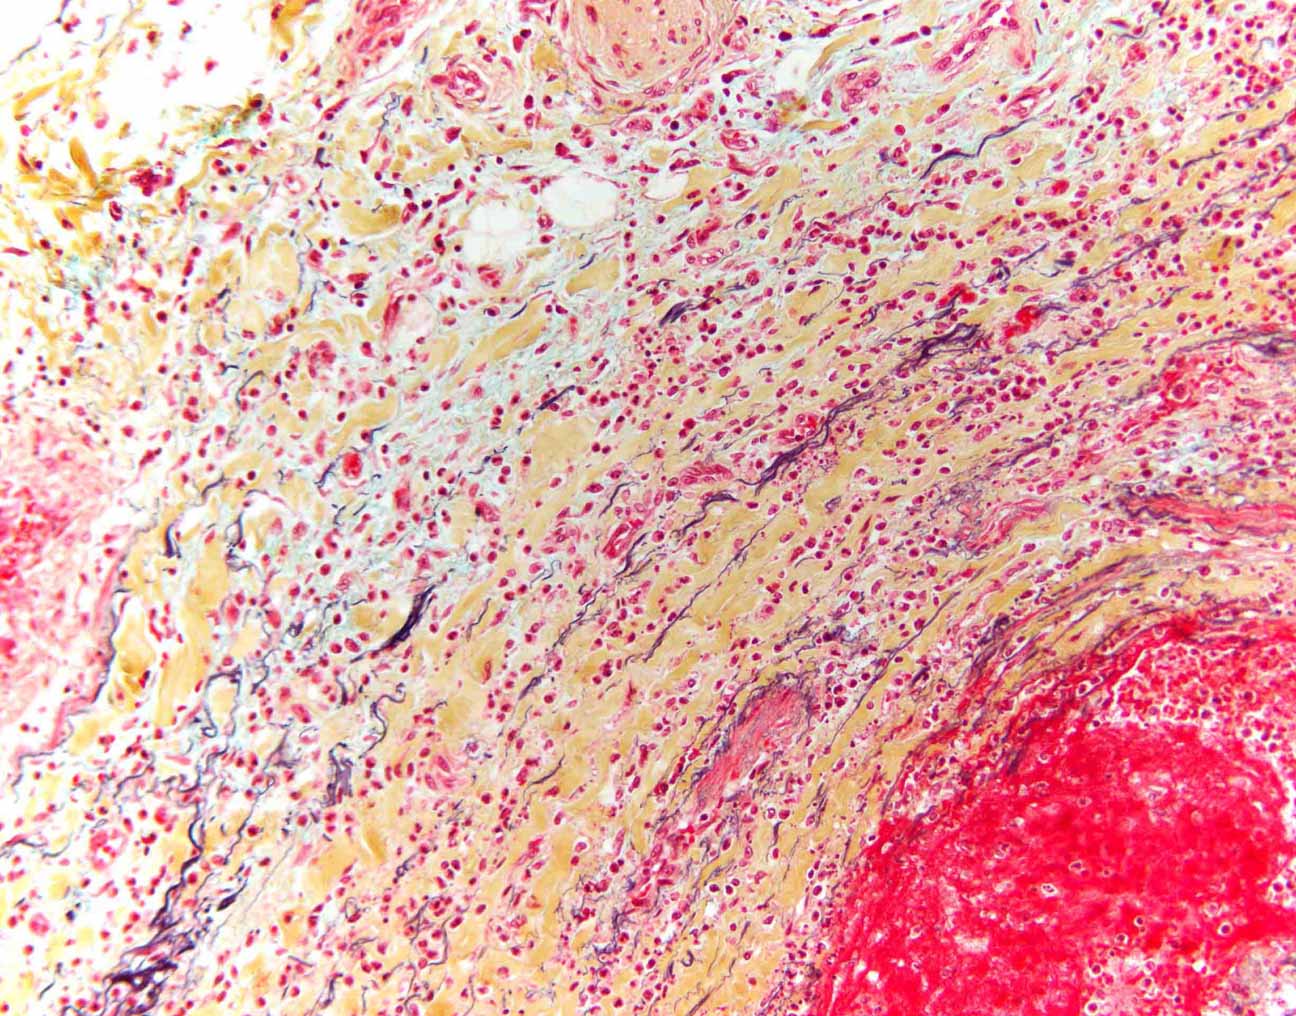 Pentachrom-Färbung eines Blutgefäßes unter dem Mikroskop